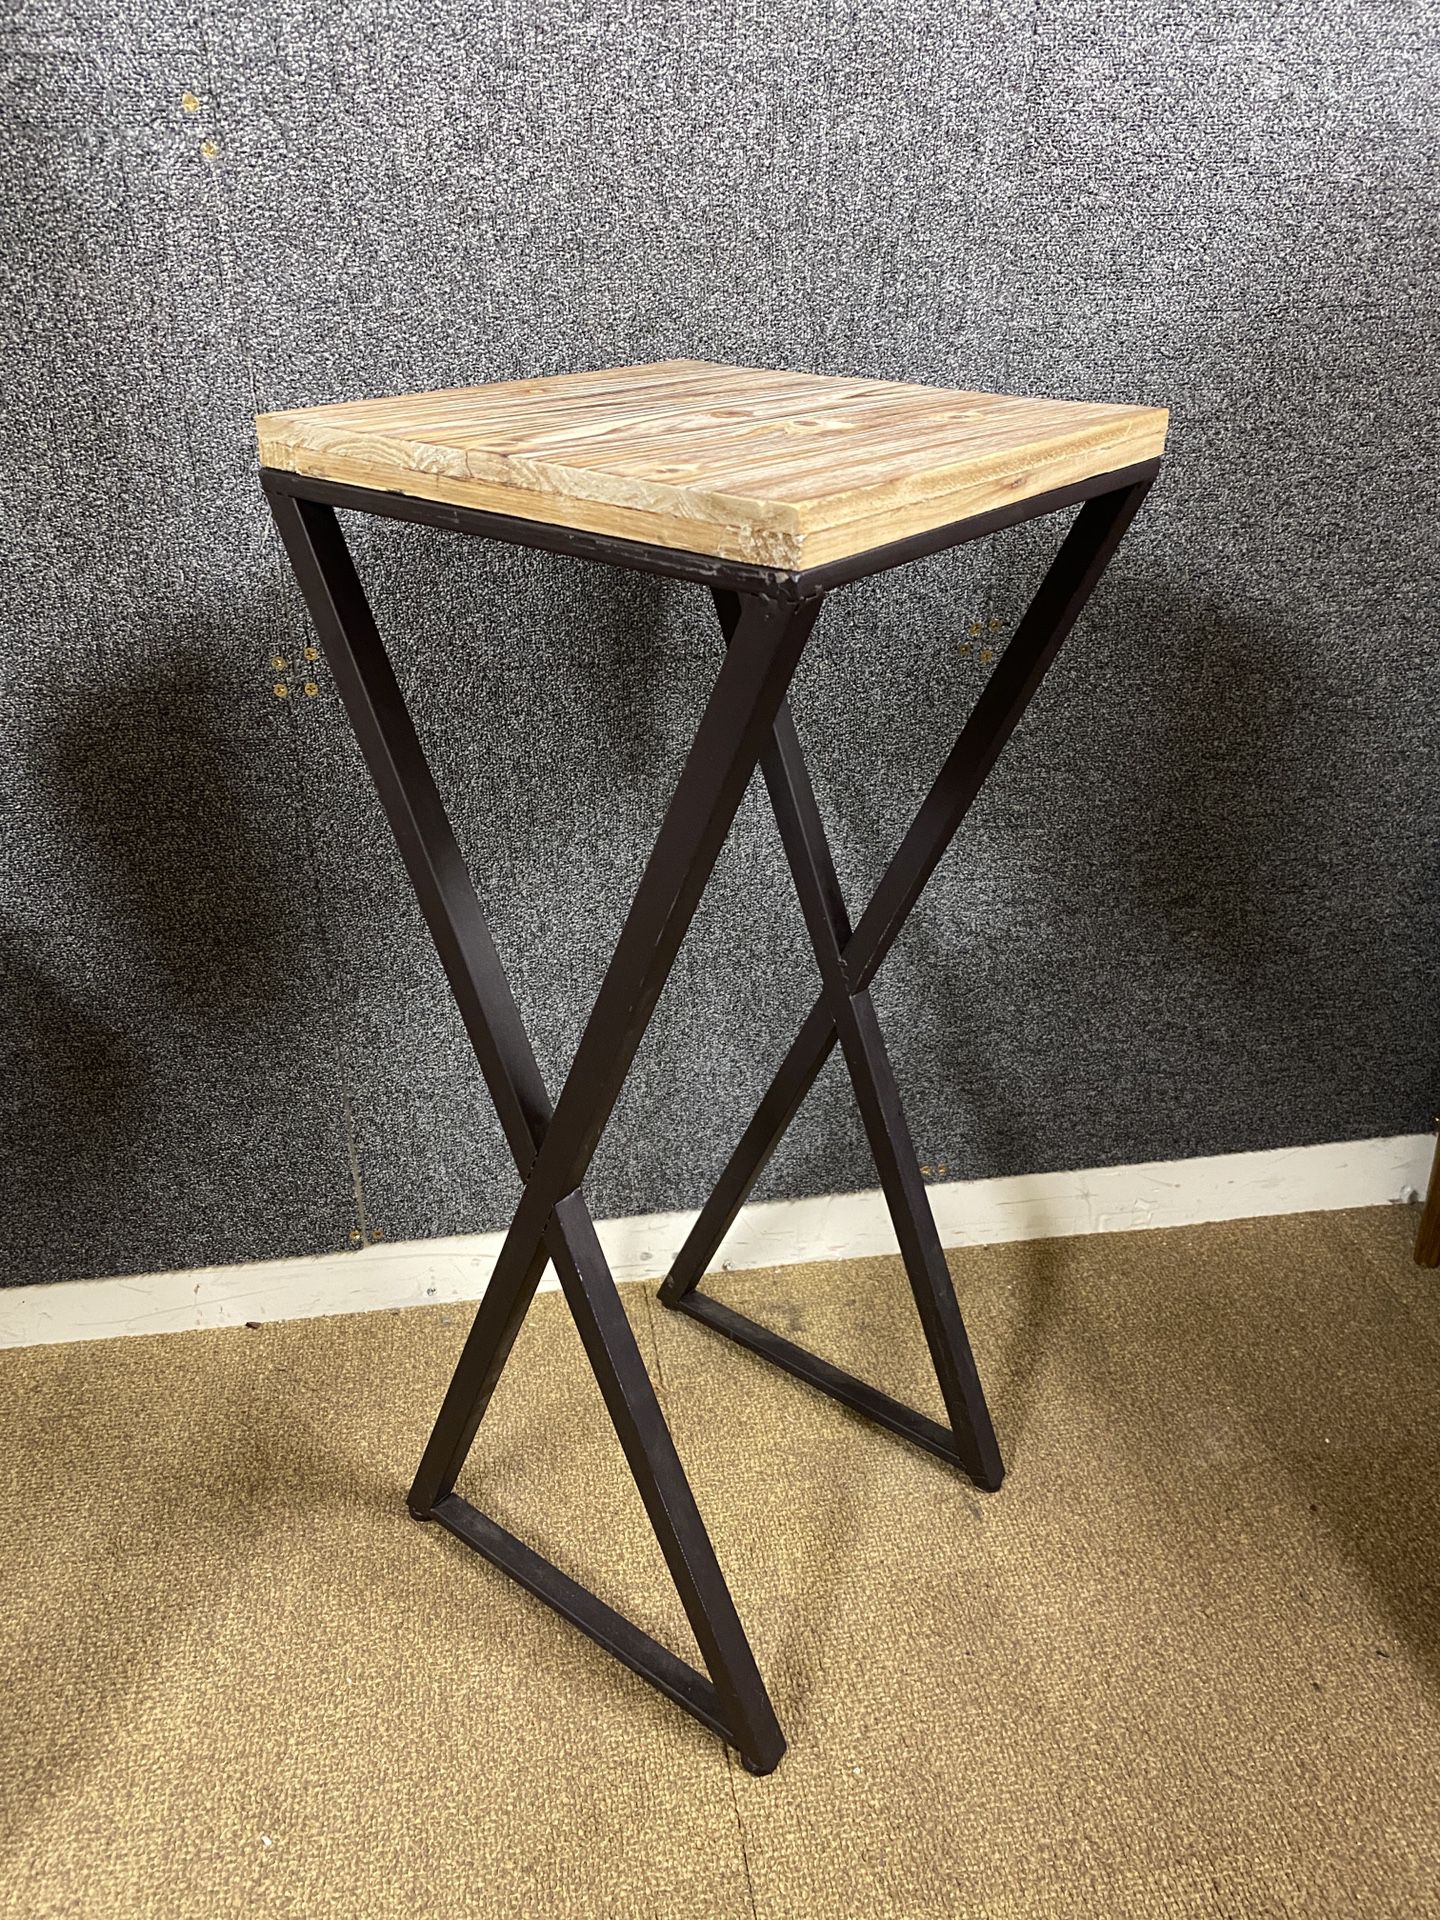 Minimalist Pedestal Table